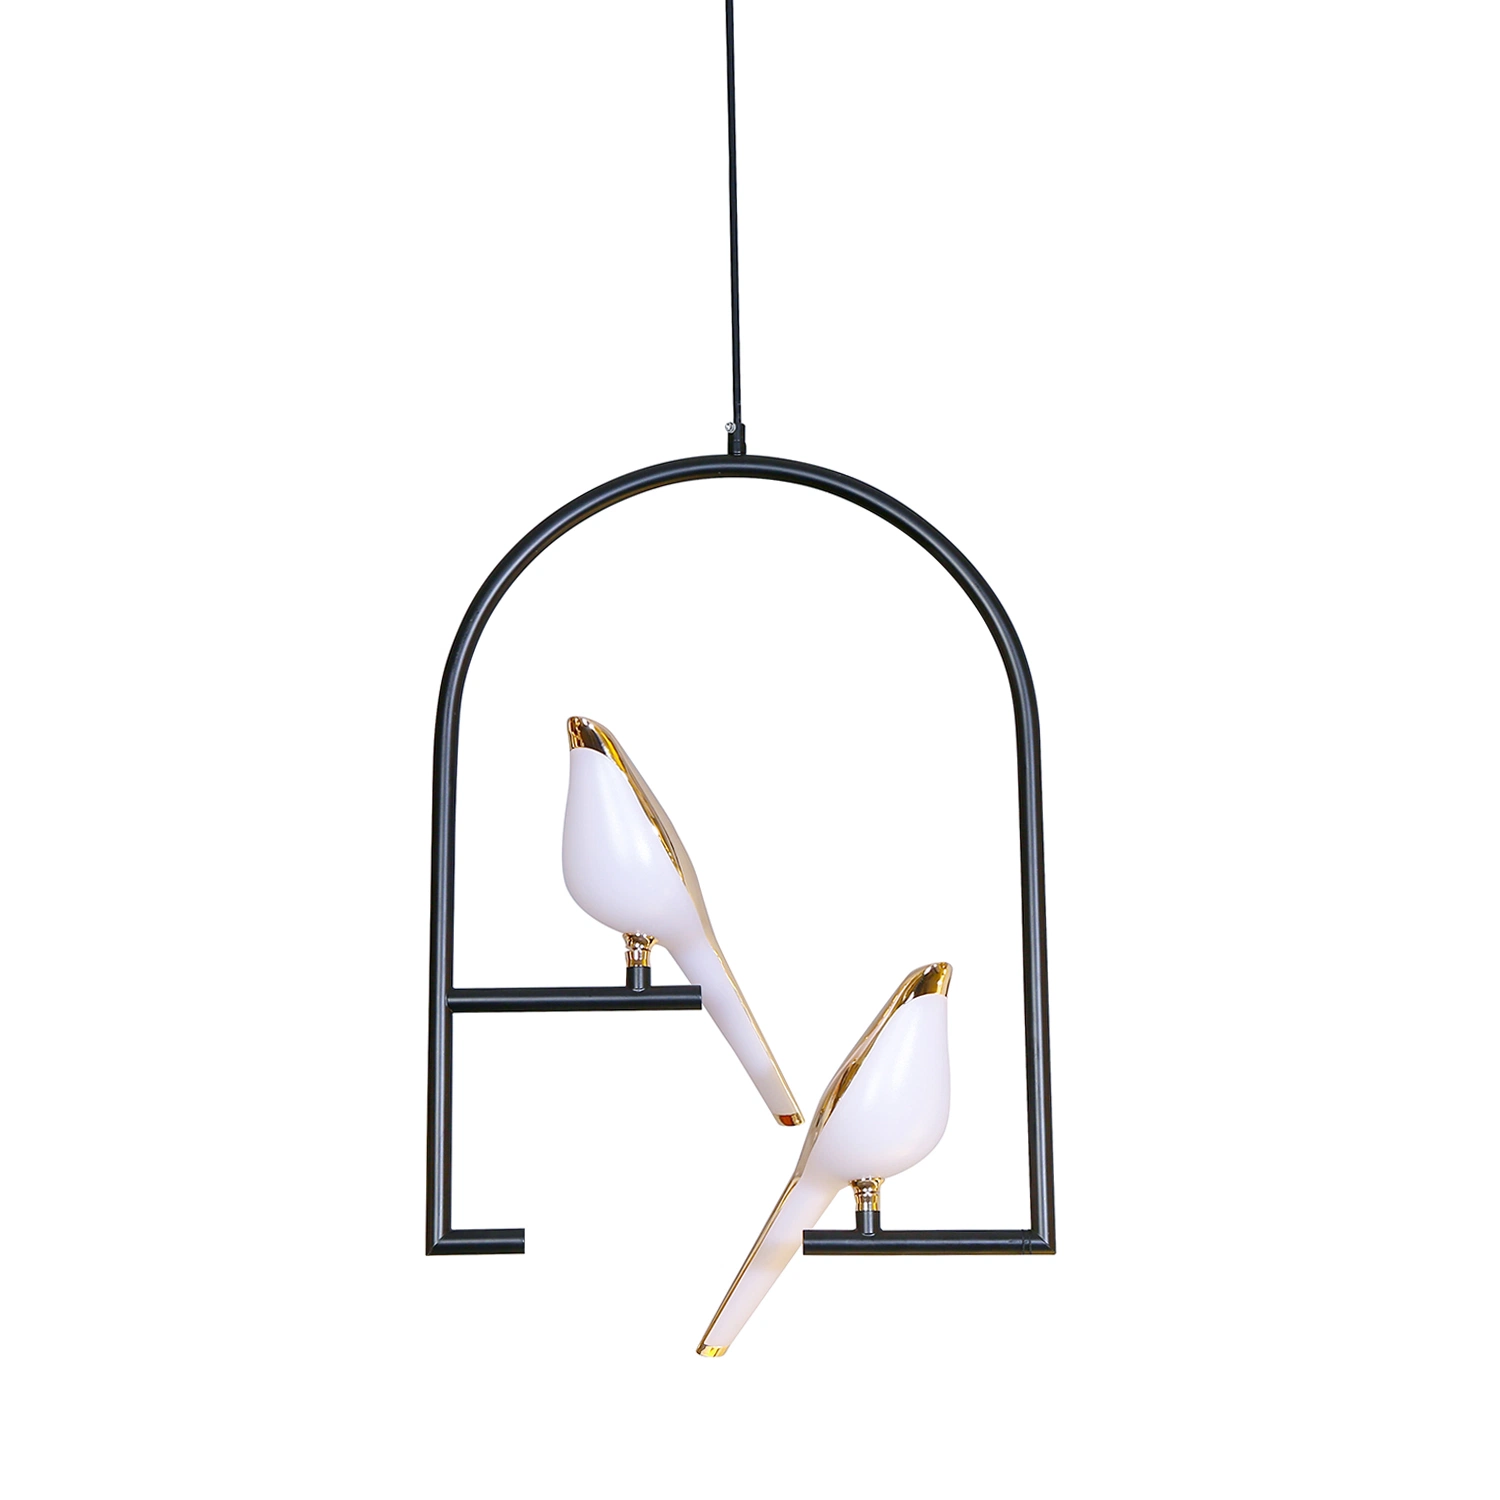 Светодиодный индикатор домашняя птица оформление тени дизайн современной жизни освещение пульта управления лампы